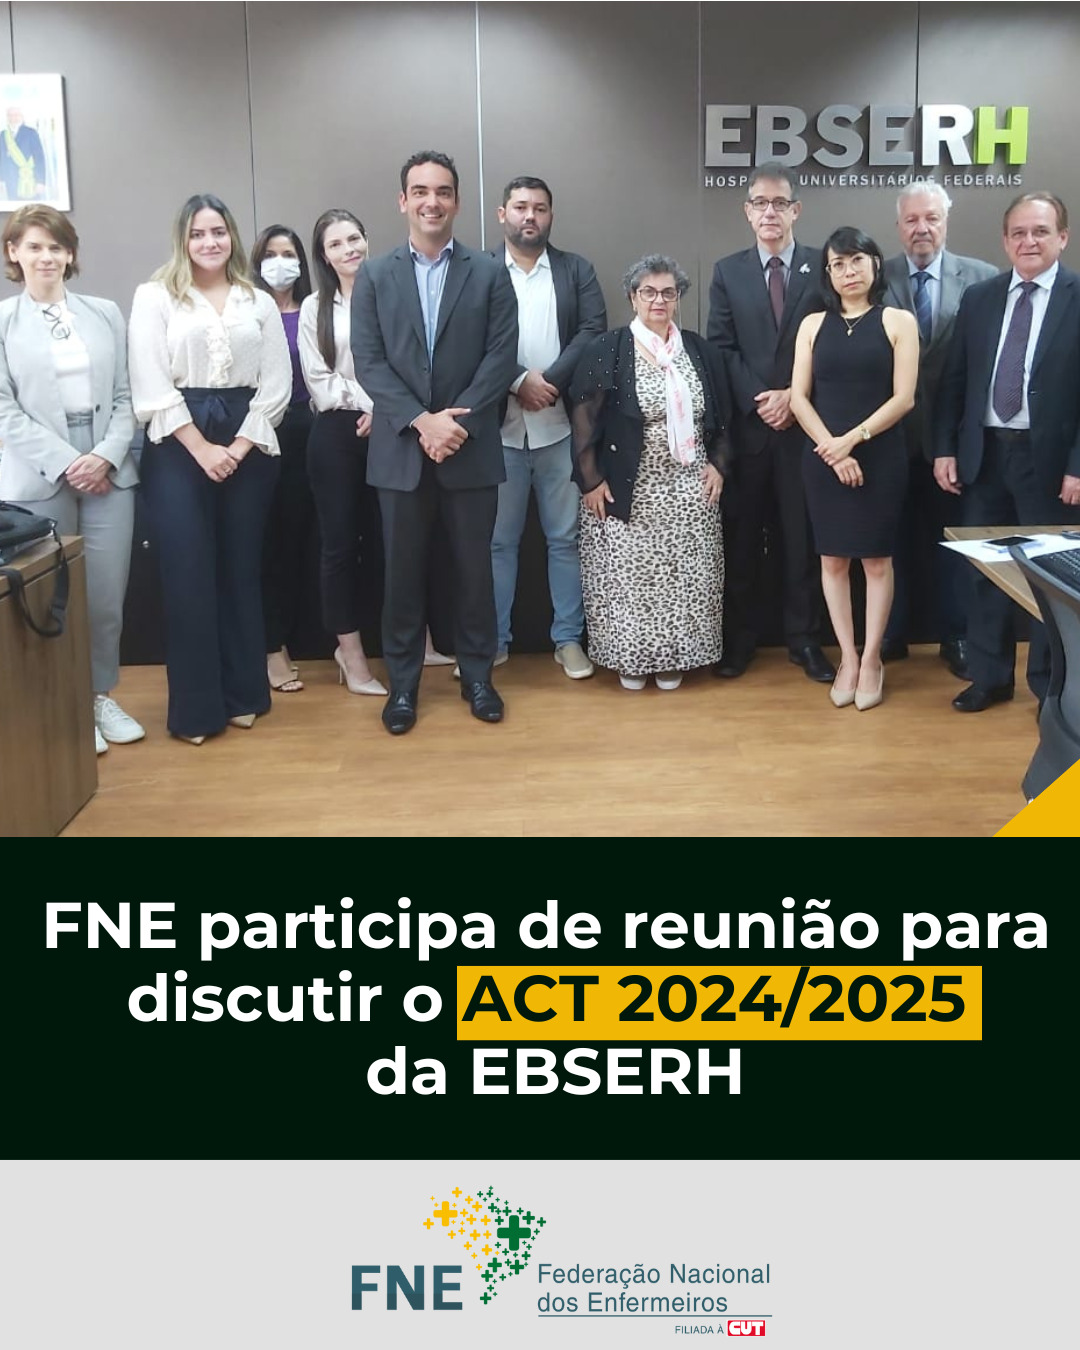 FNE participa de reunião para discutir o ACT 2024/2025 da EBSERH